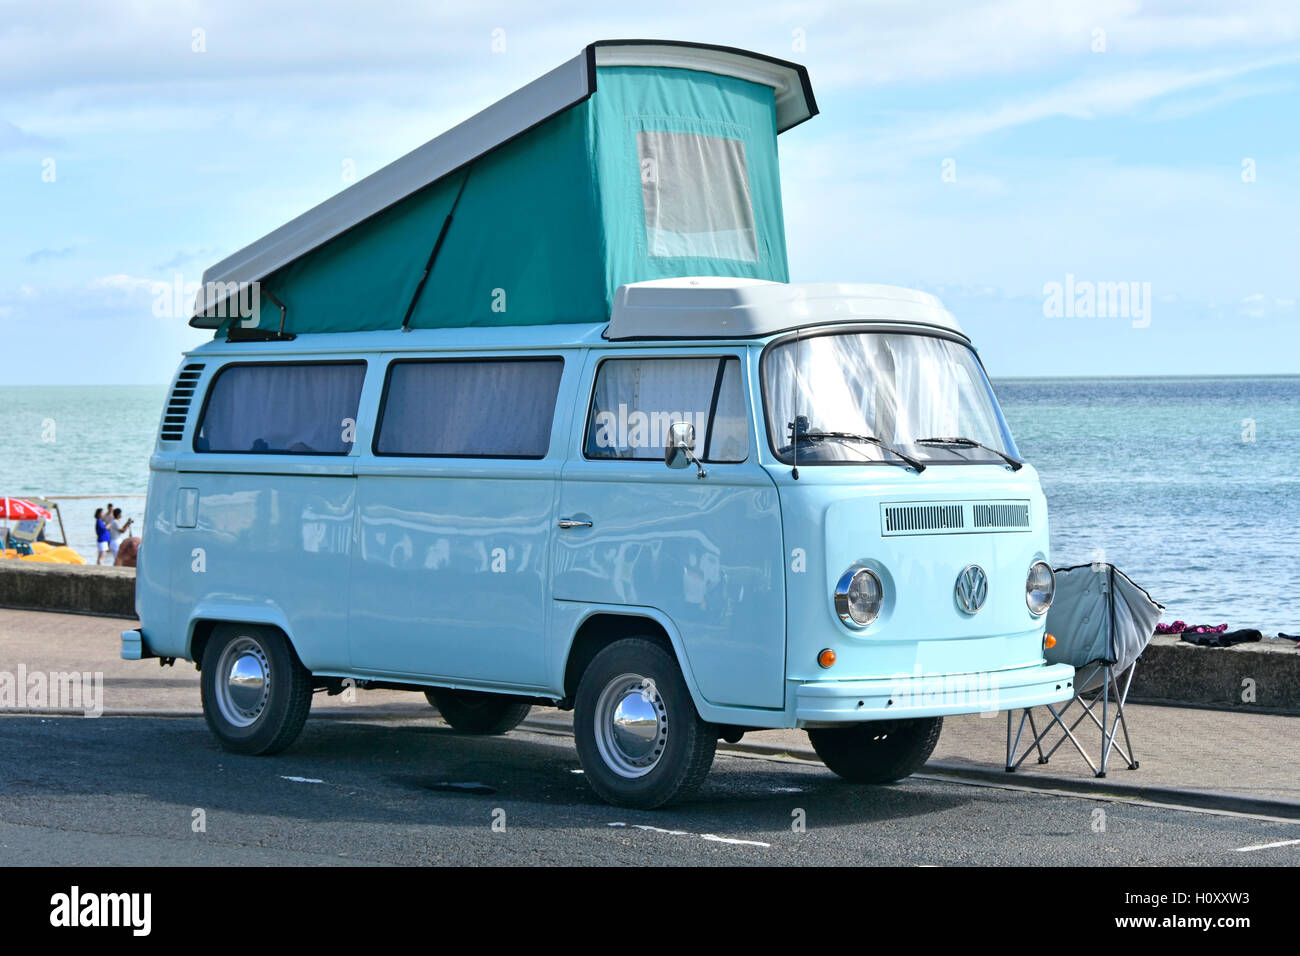 VW volkswagen motorhome RV camper tetto rialzato parcheggiato Shanklin mare Isola di Wight in Inghilterra UK holiday lungomare parcheggio Bay Beach & Sea Foto Stock